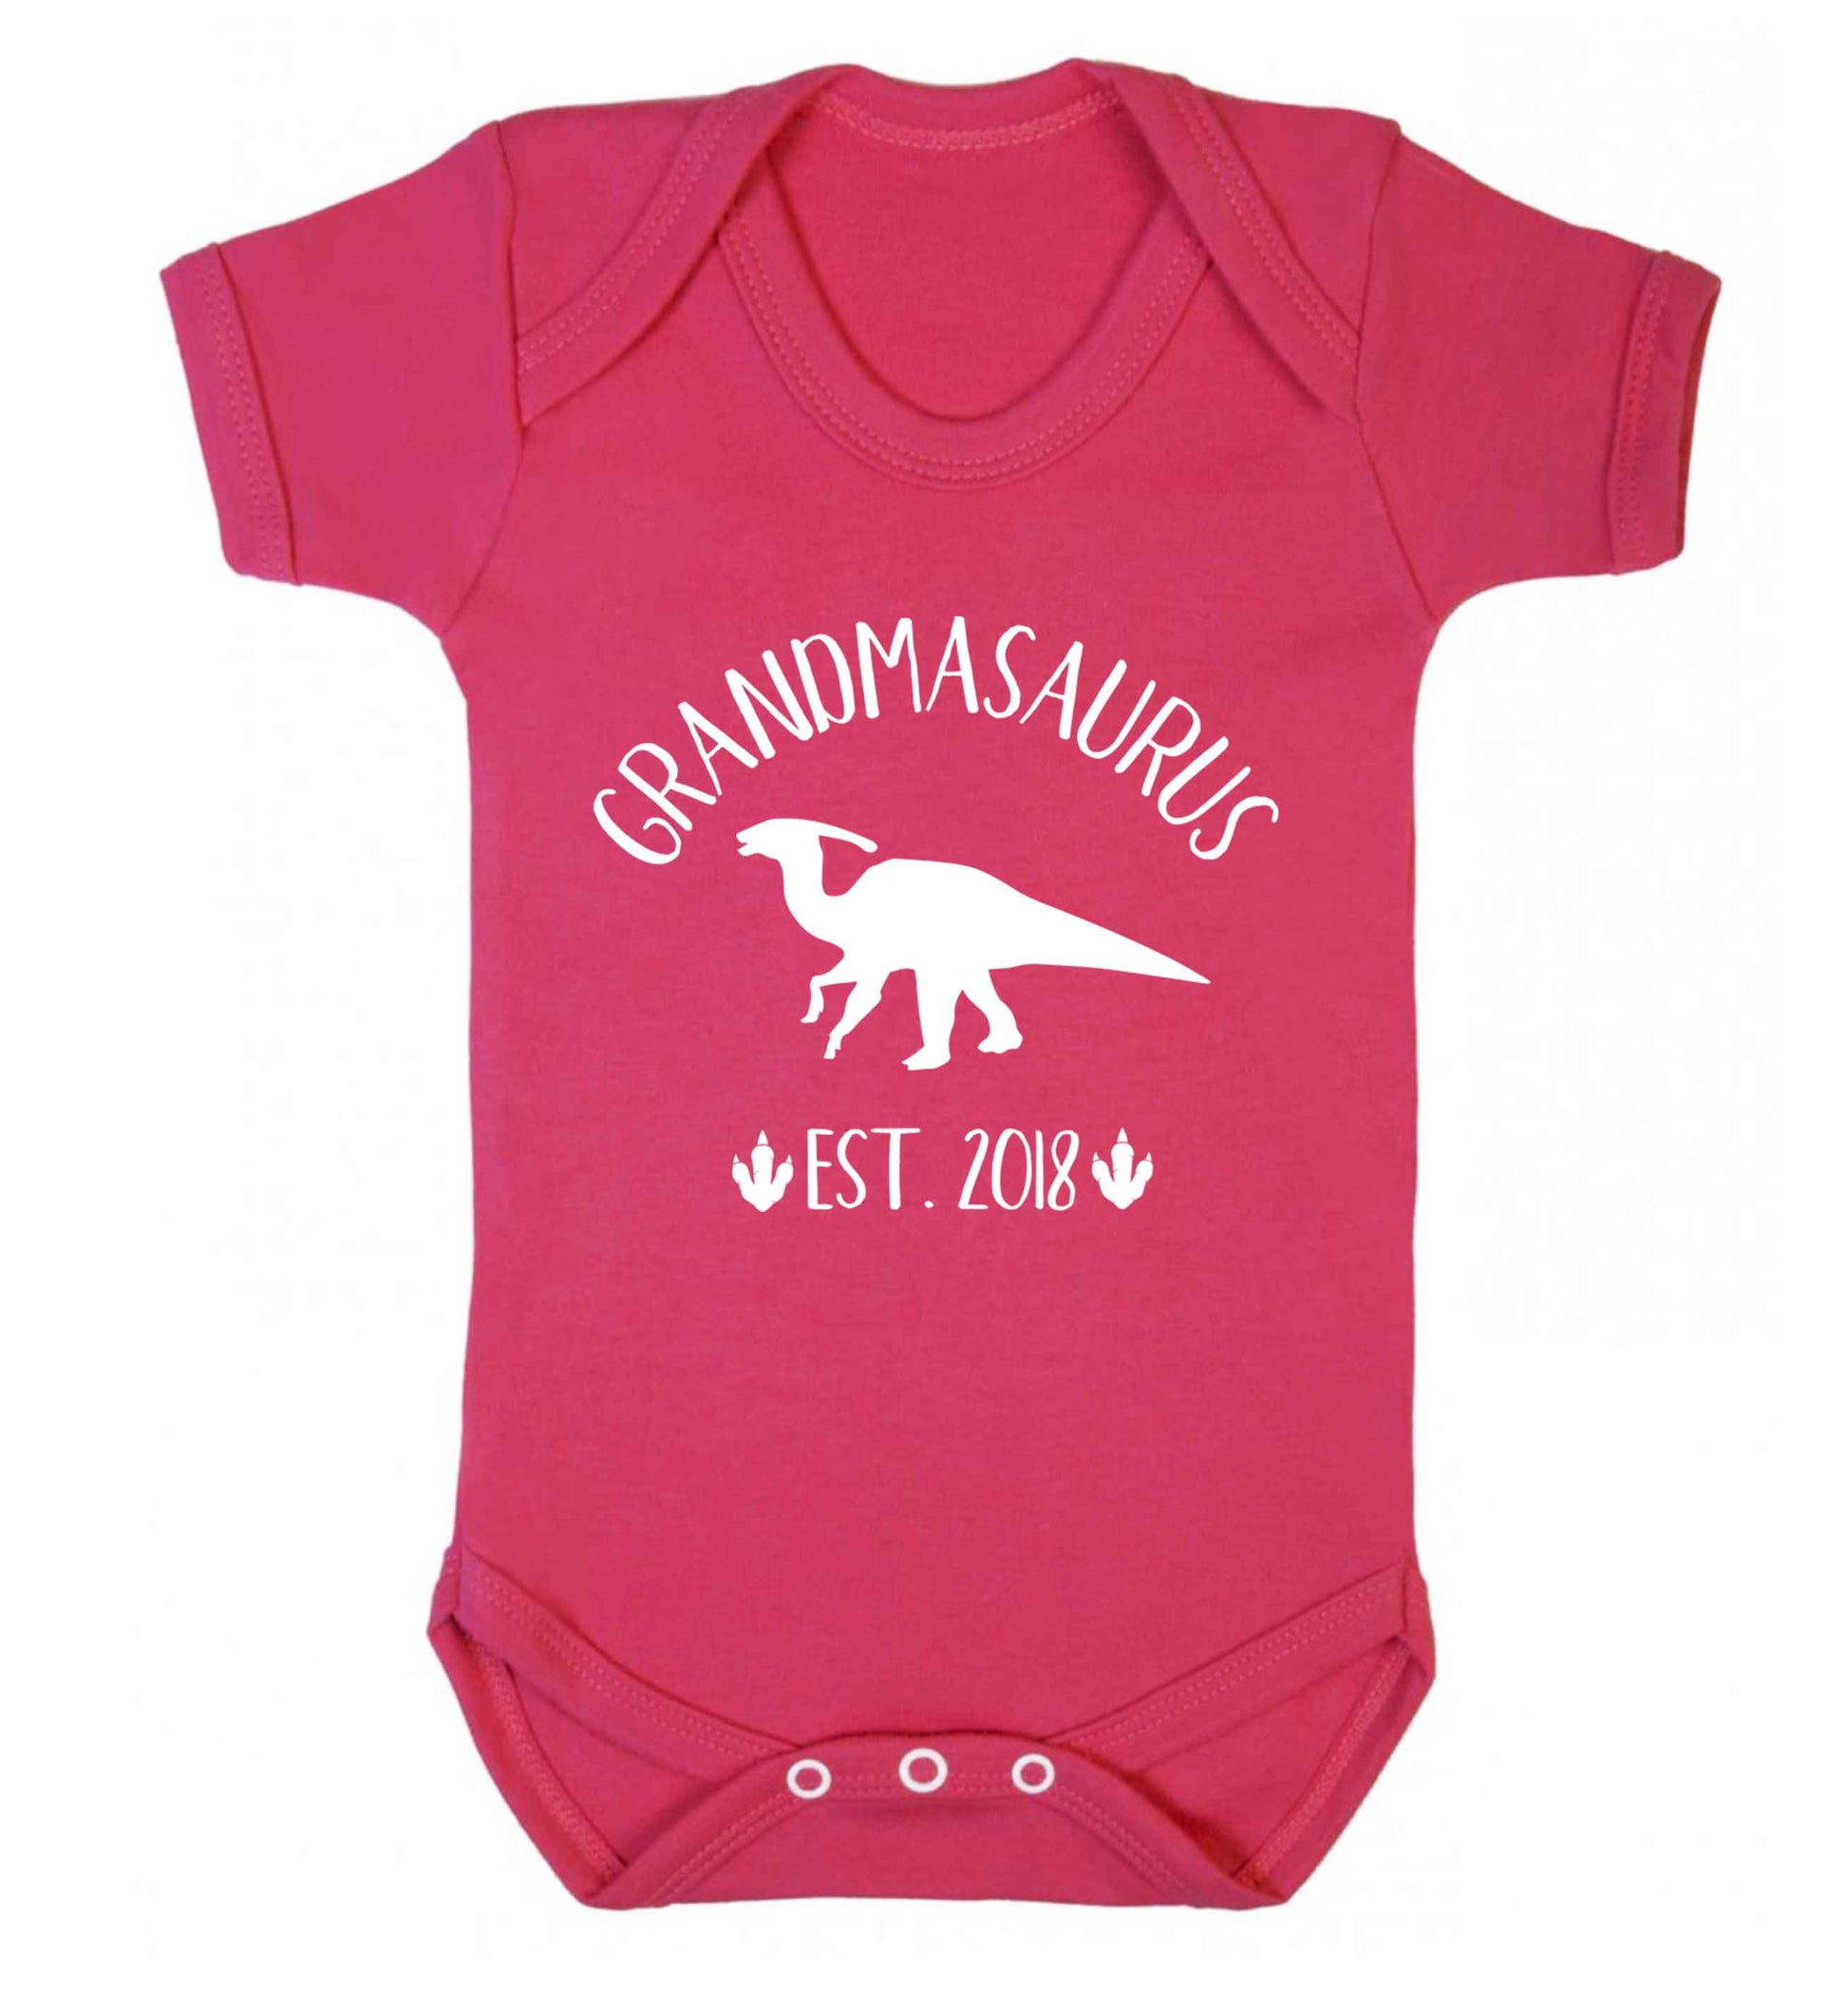 Personalised grandmasaurus since (custom date) Baby Vest dark pink 18-24 months